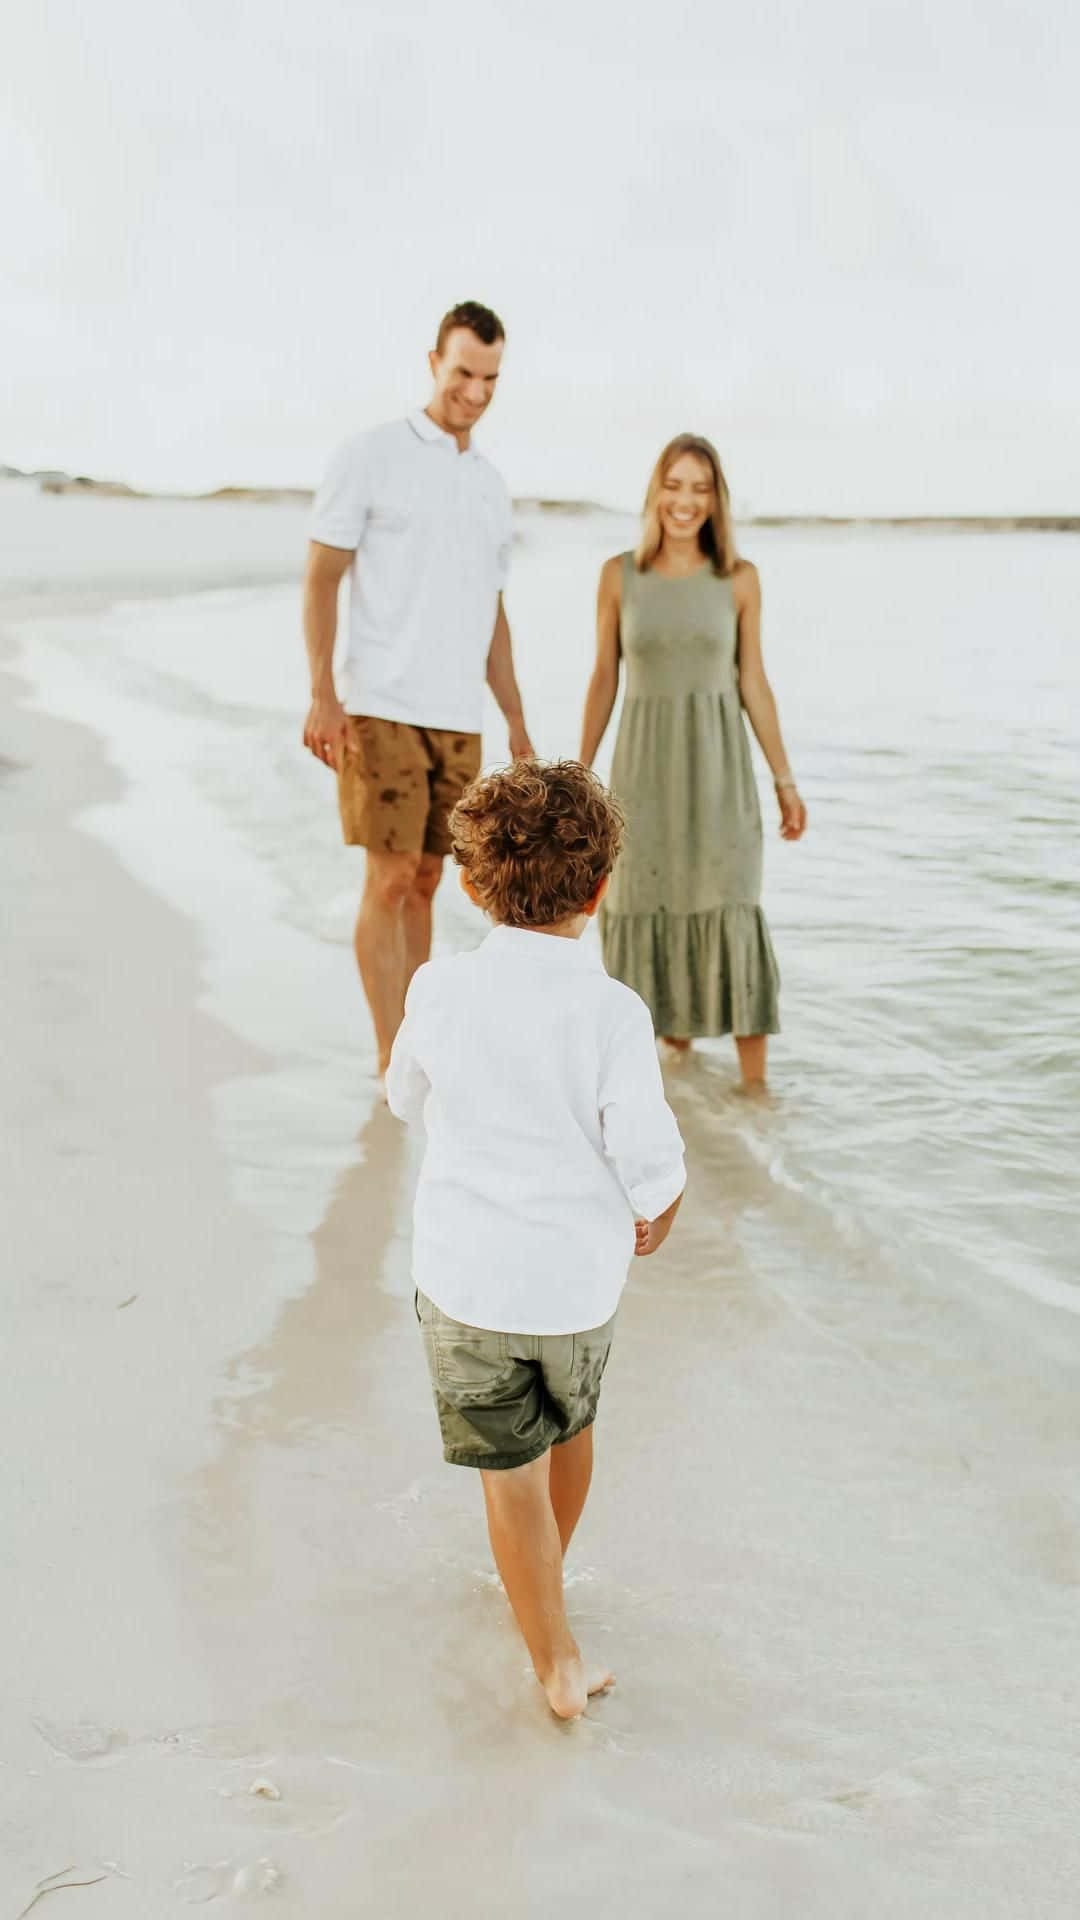 Familien går på stranden med en ung dreng.